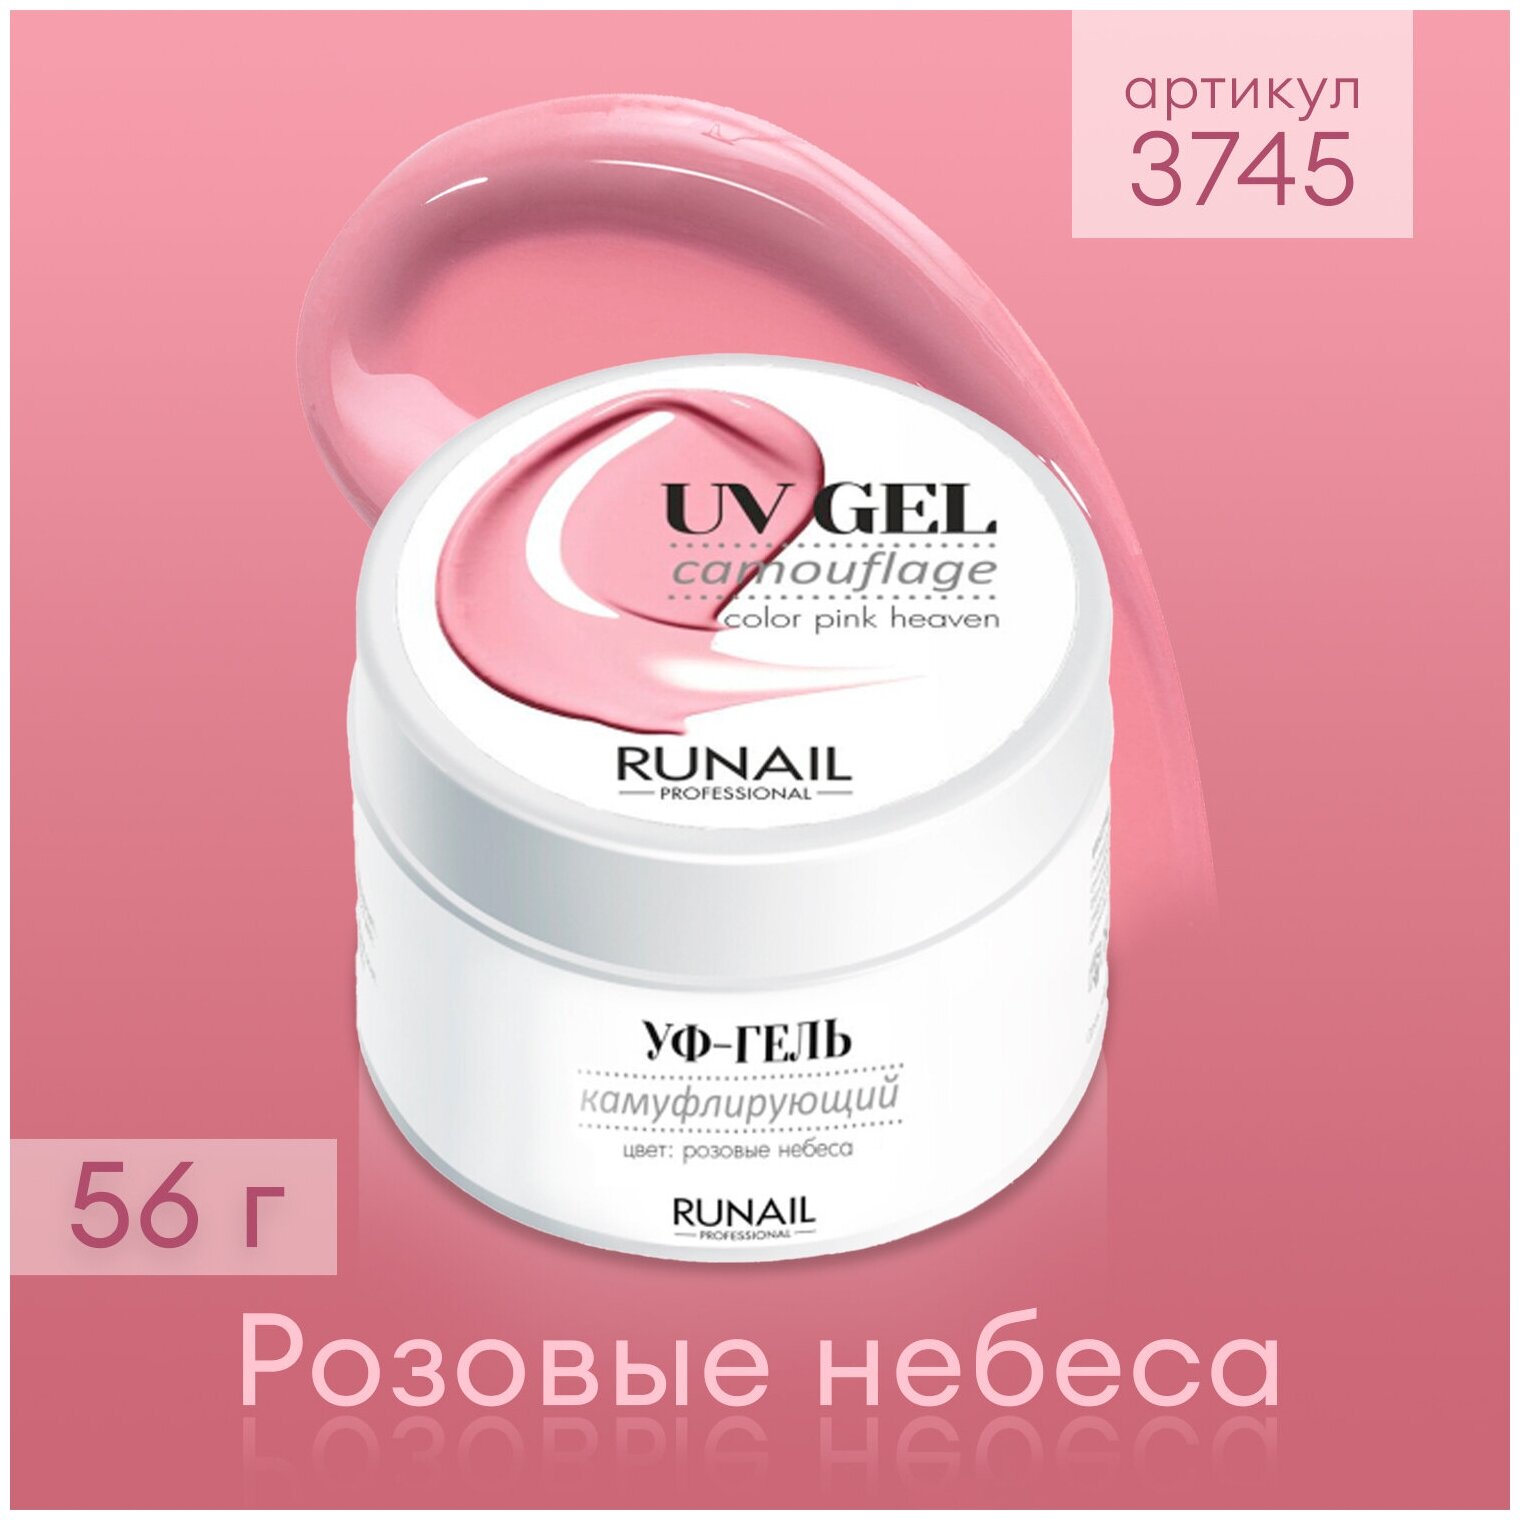 RuNail Professional / Камуфлирующий однофазный УФ-гель лак для наращивания ногтей цвет: Розовые небеса, 56 г 3745